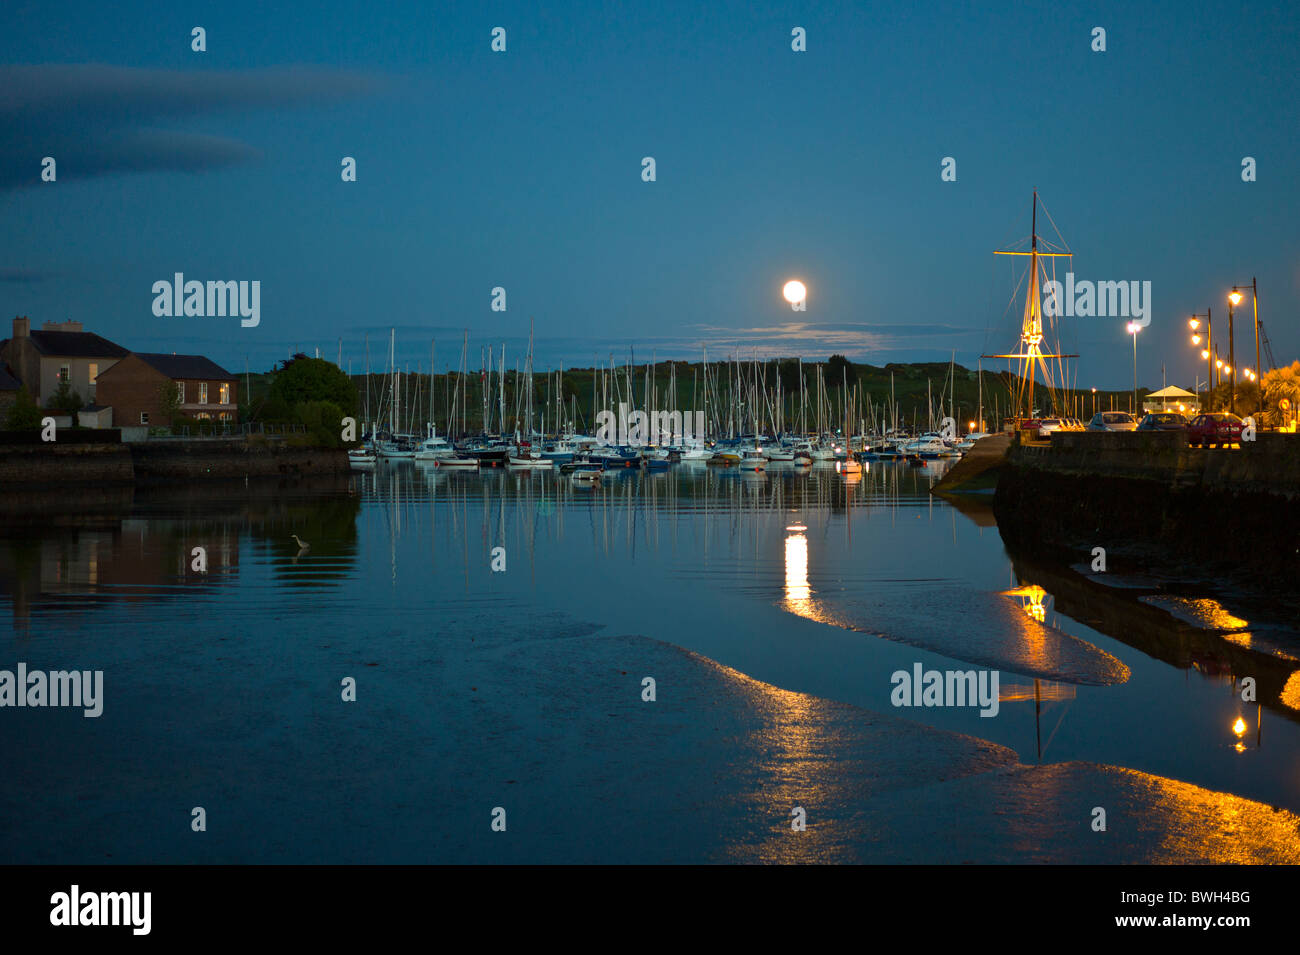 Beliebt als touristische Destination Mondschein Kinsale Hafen, beliebtes Ferienziel in County Cork, Irland Stockfoto